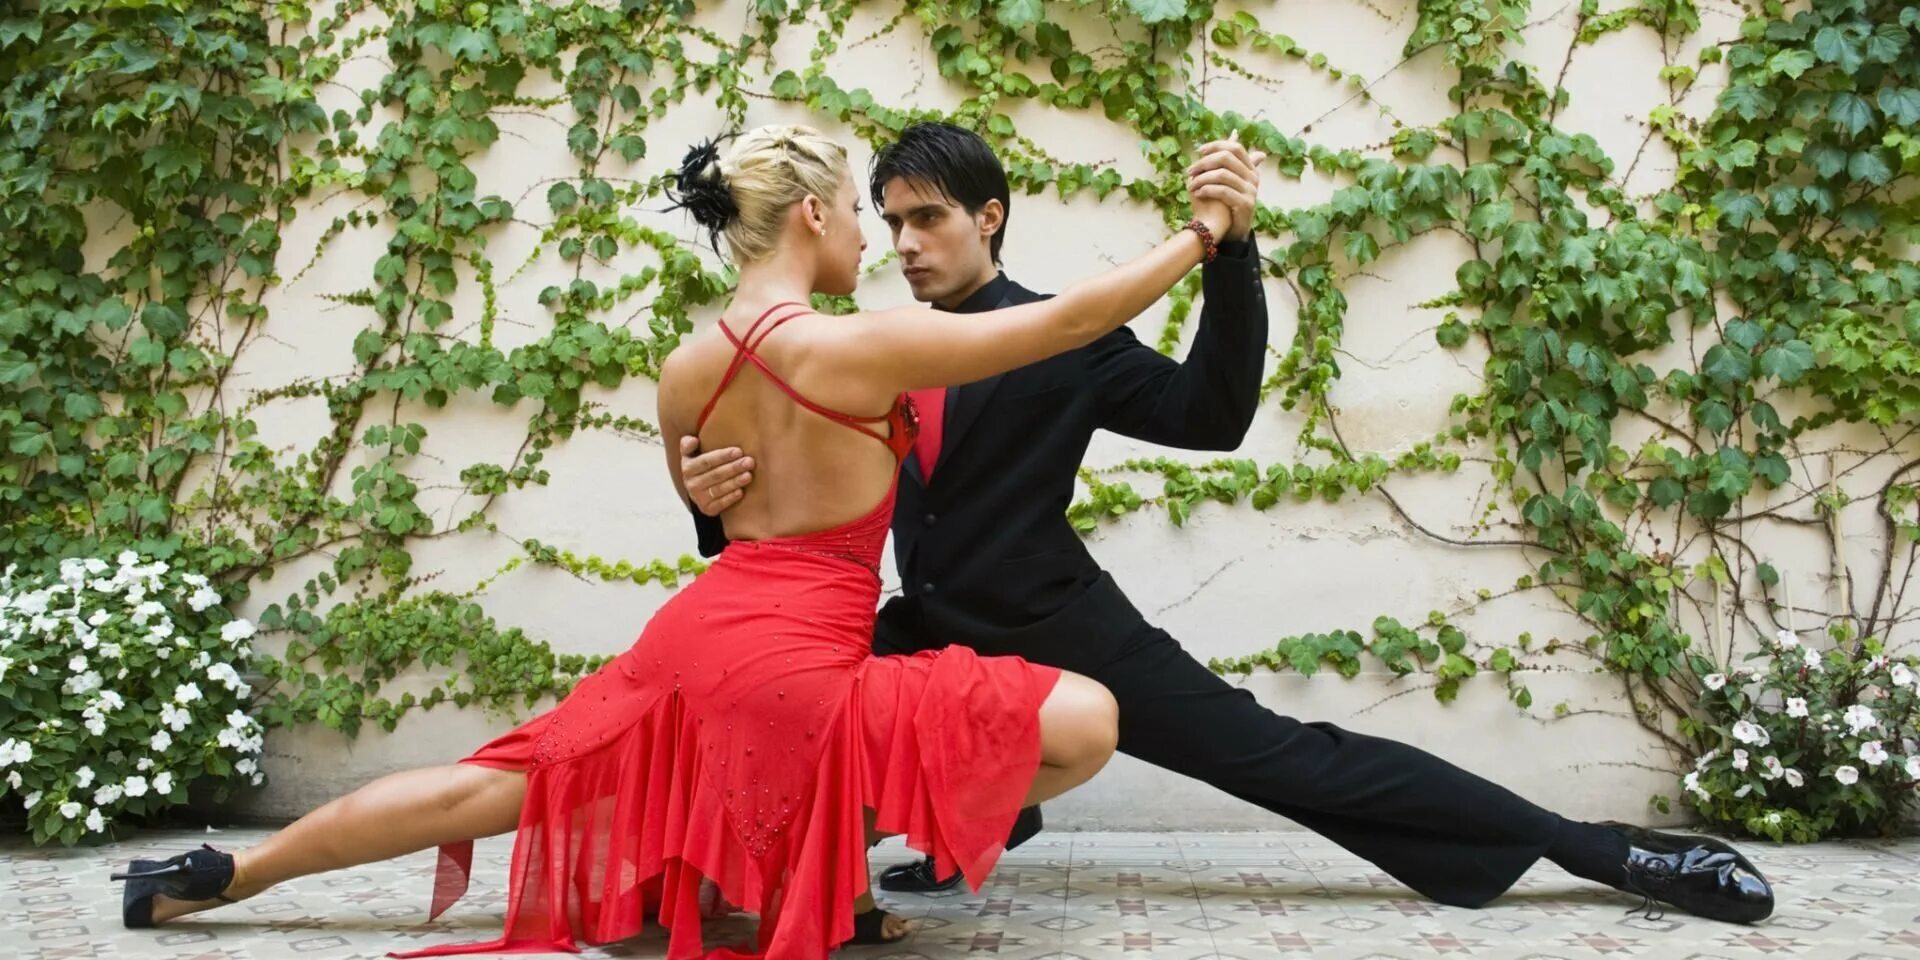 Аргентинское танго. Танец пары. Романтический танец. Танго танец. Русские парные танцы